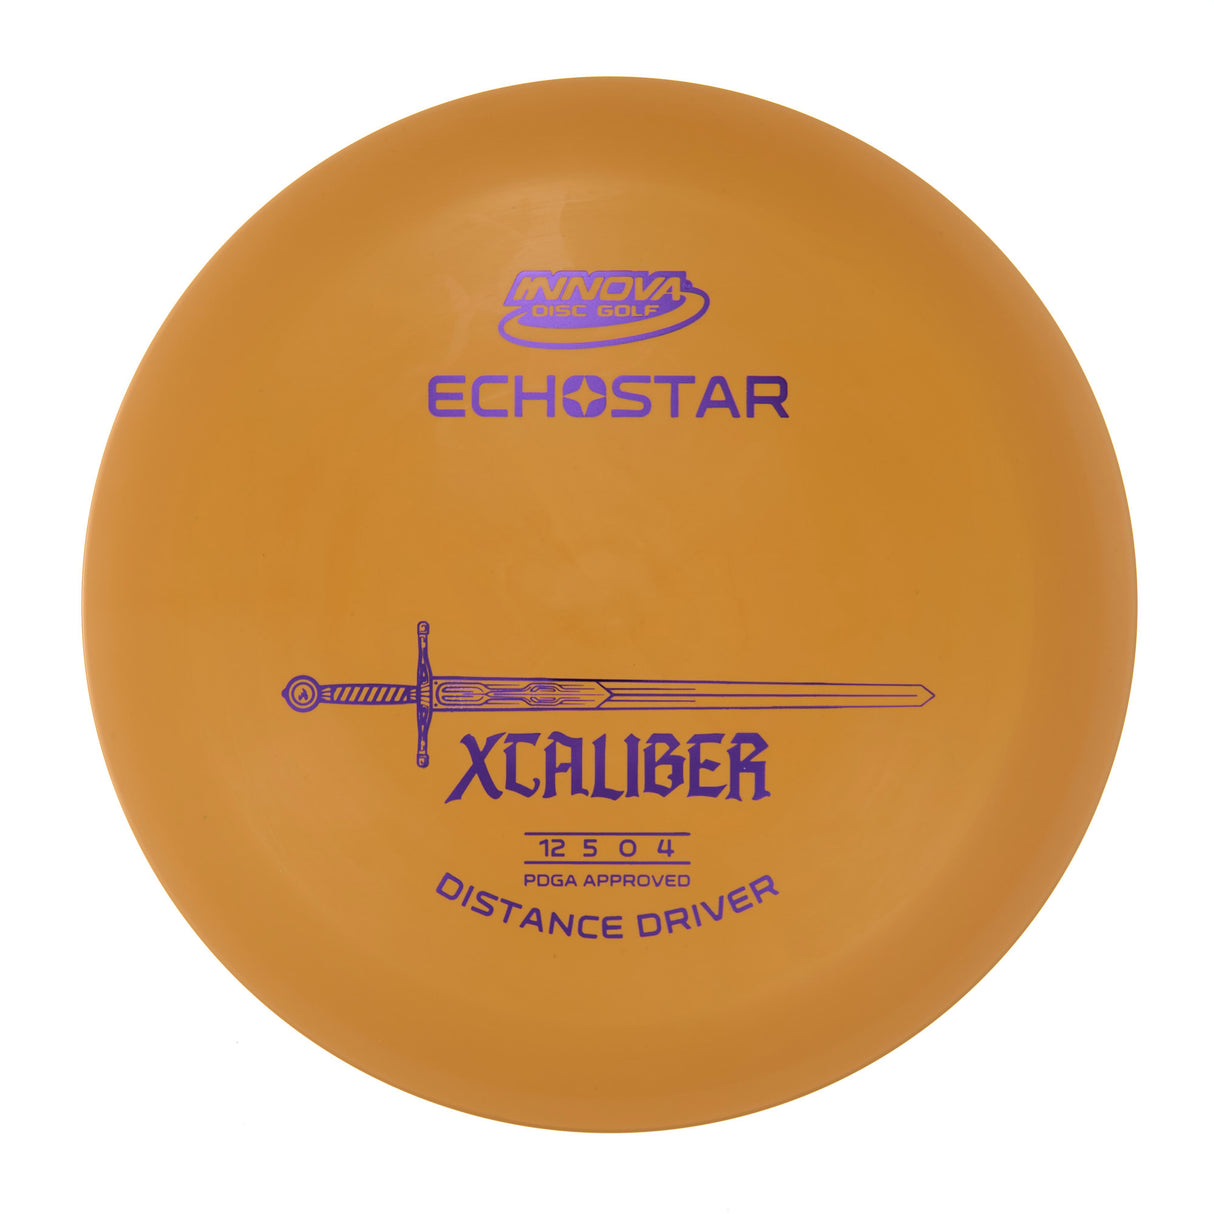 Innova XCaliber - Echo Star  172g | Style 0009